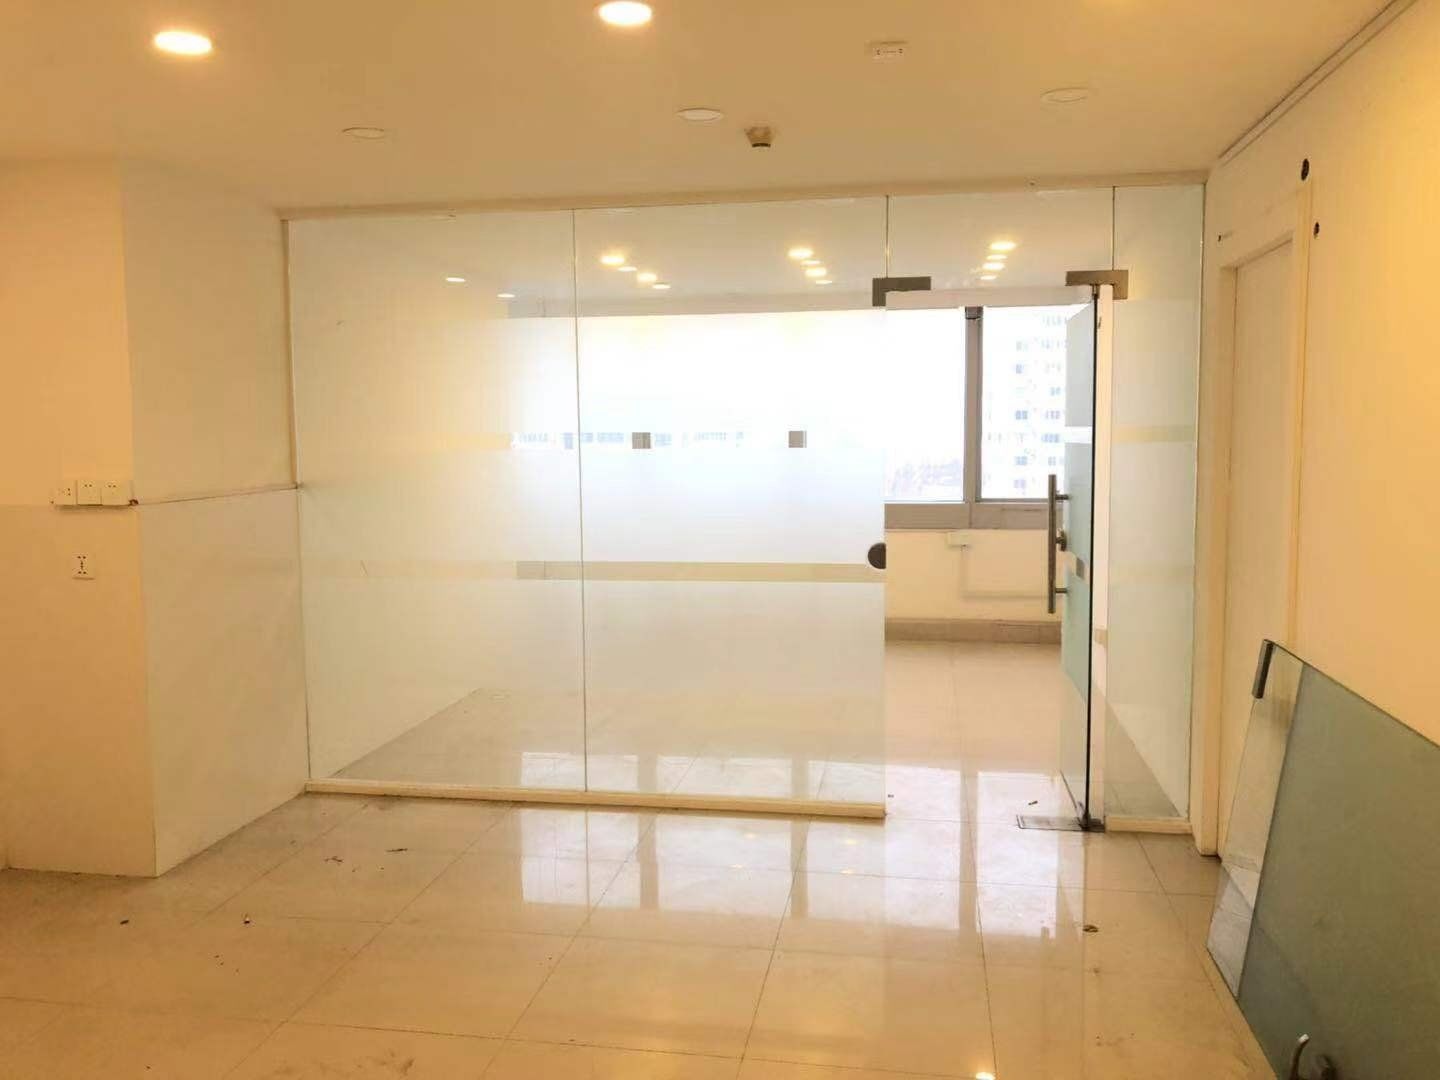 明凯大厦60平米办公室出租-租金价格3.55元/m²/天